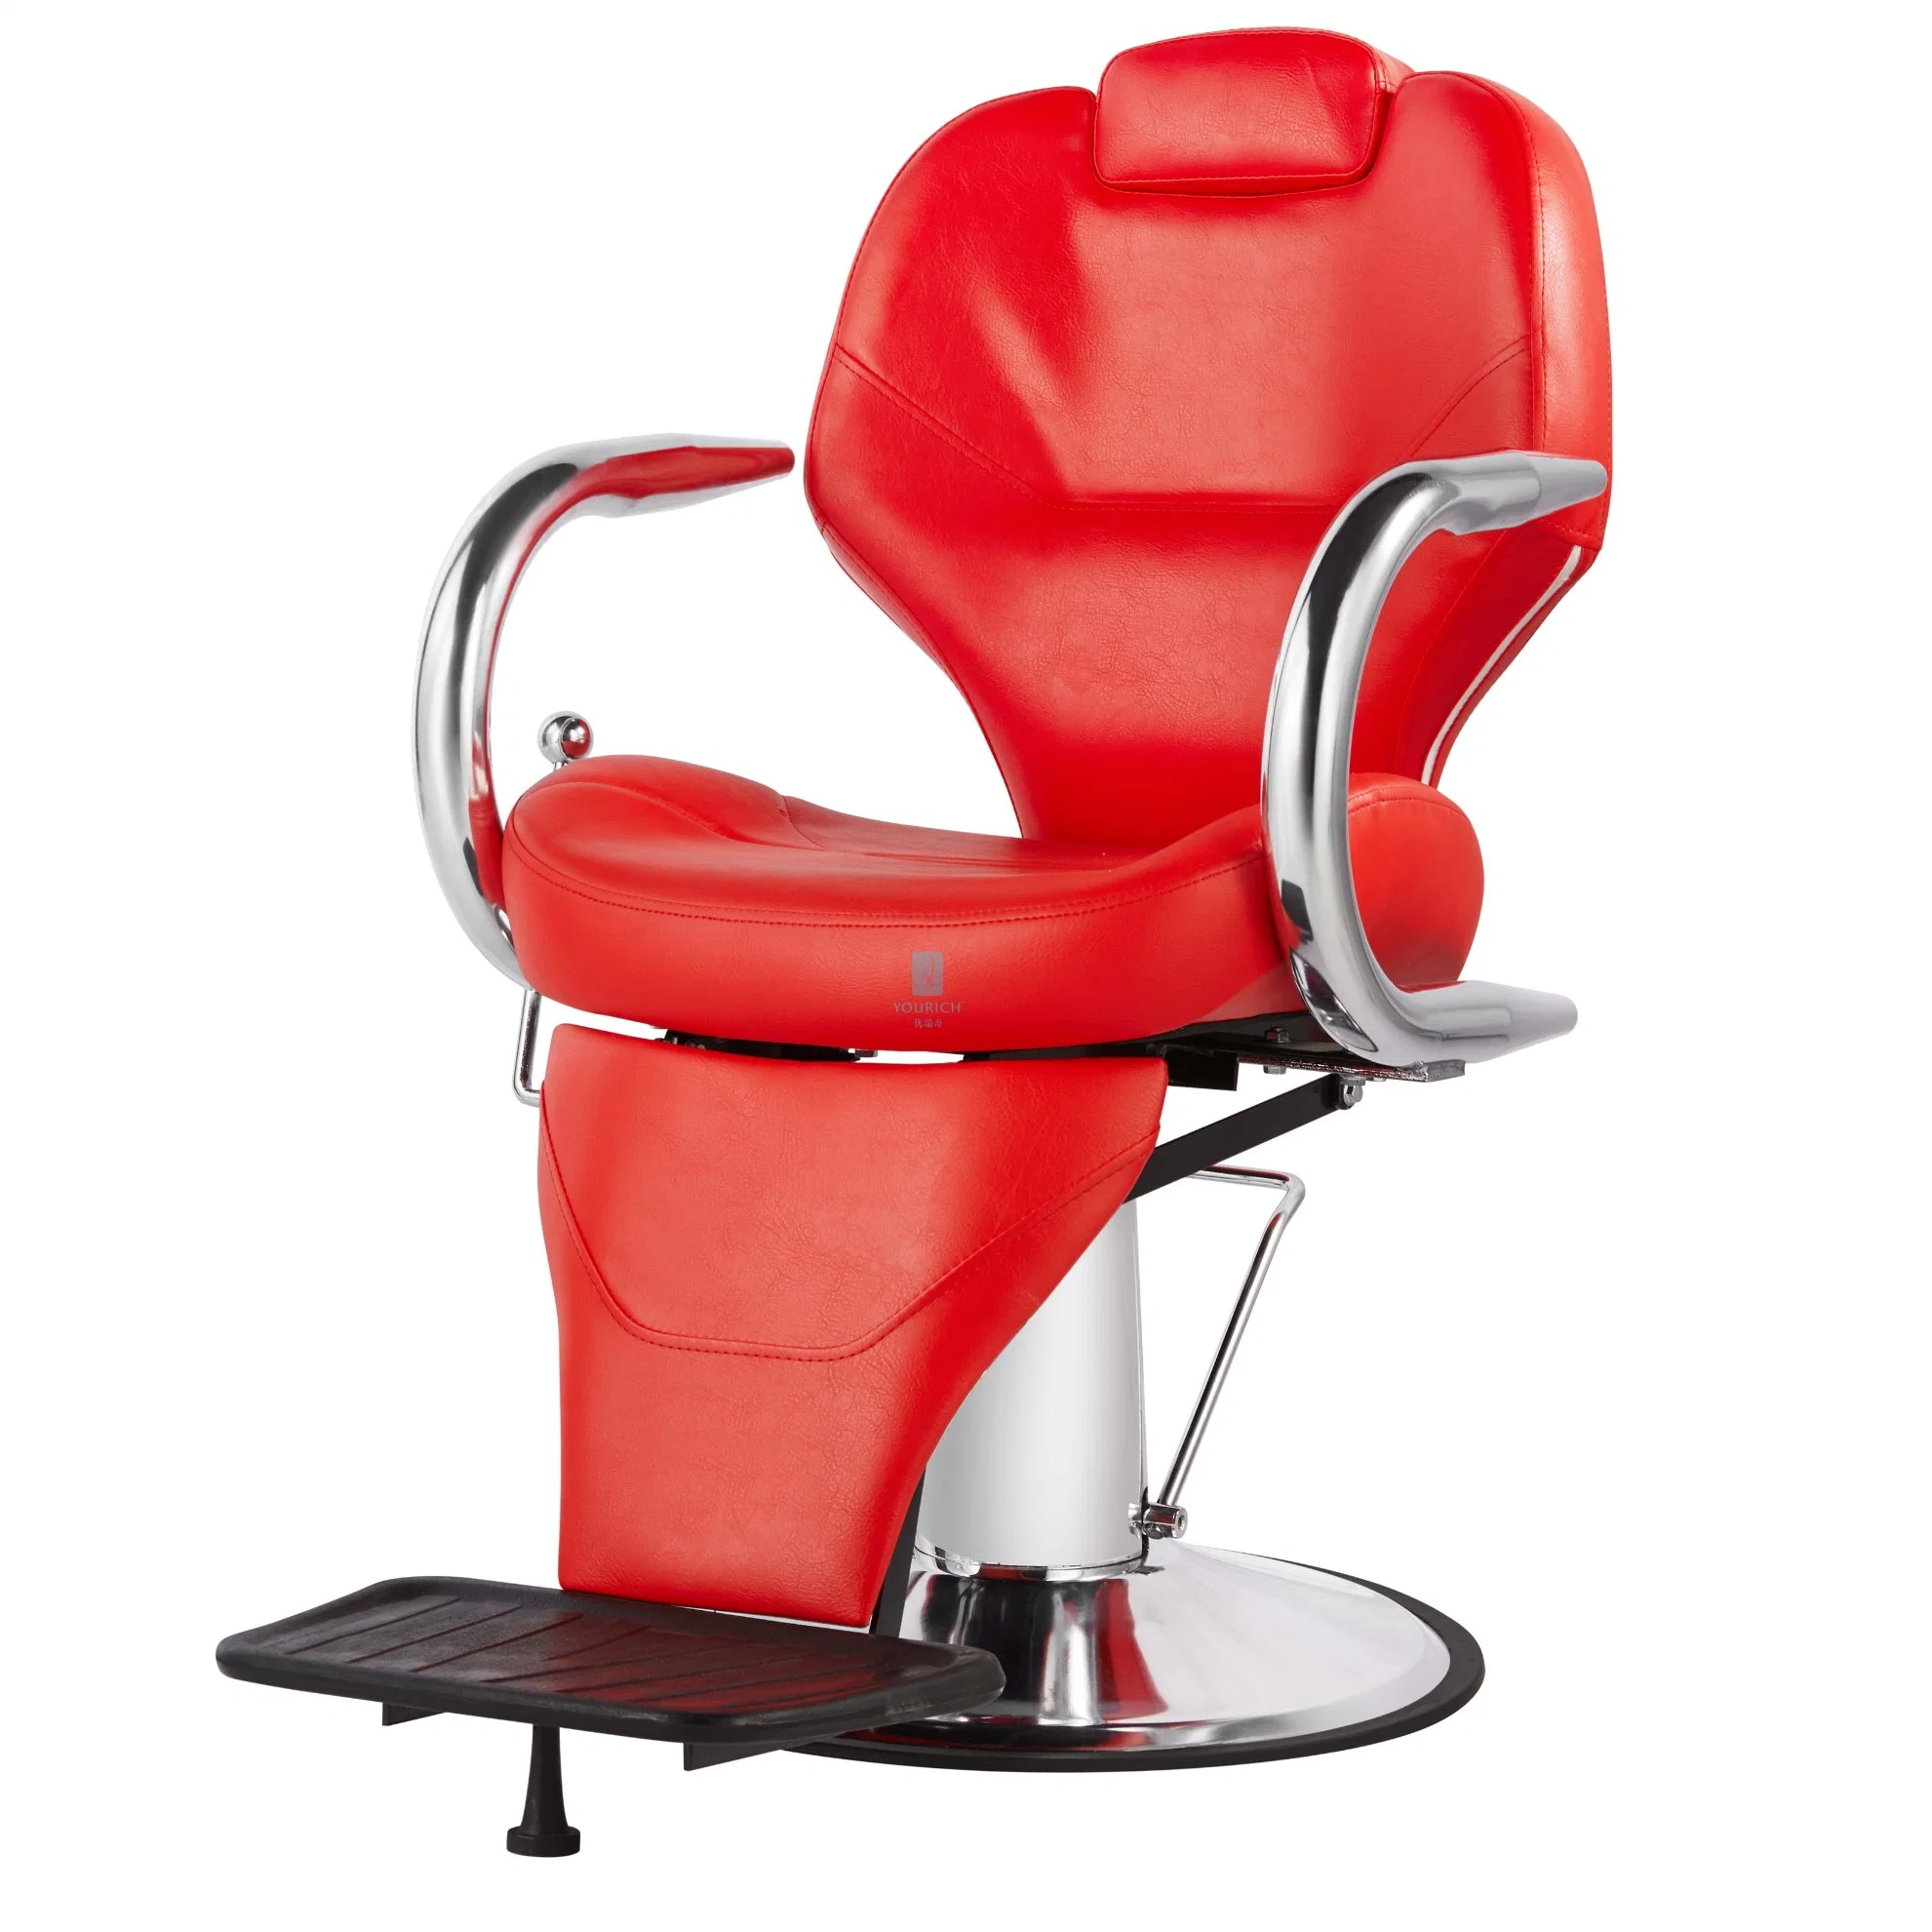 La vieja escuela Silla de barbero apoyabrazos inoxidable sillas de salón de peluquería SPA de belleza muebles